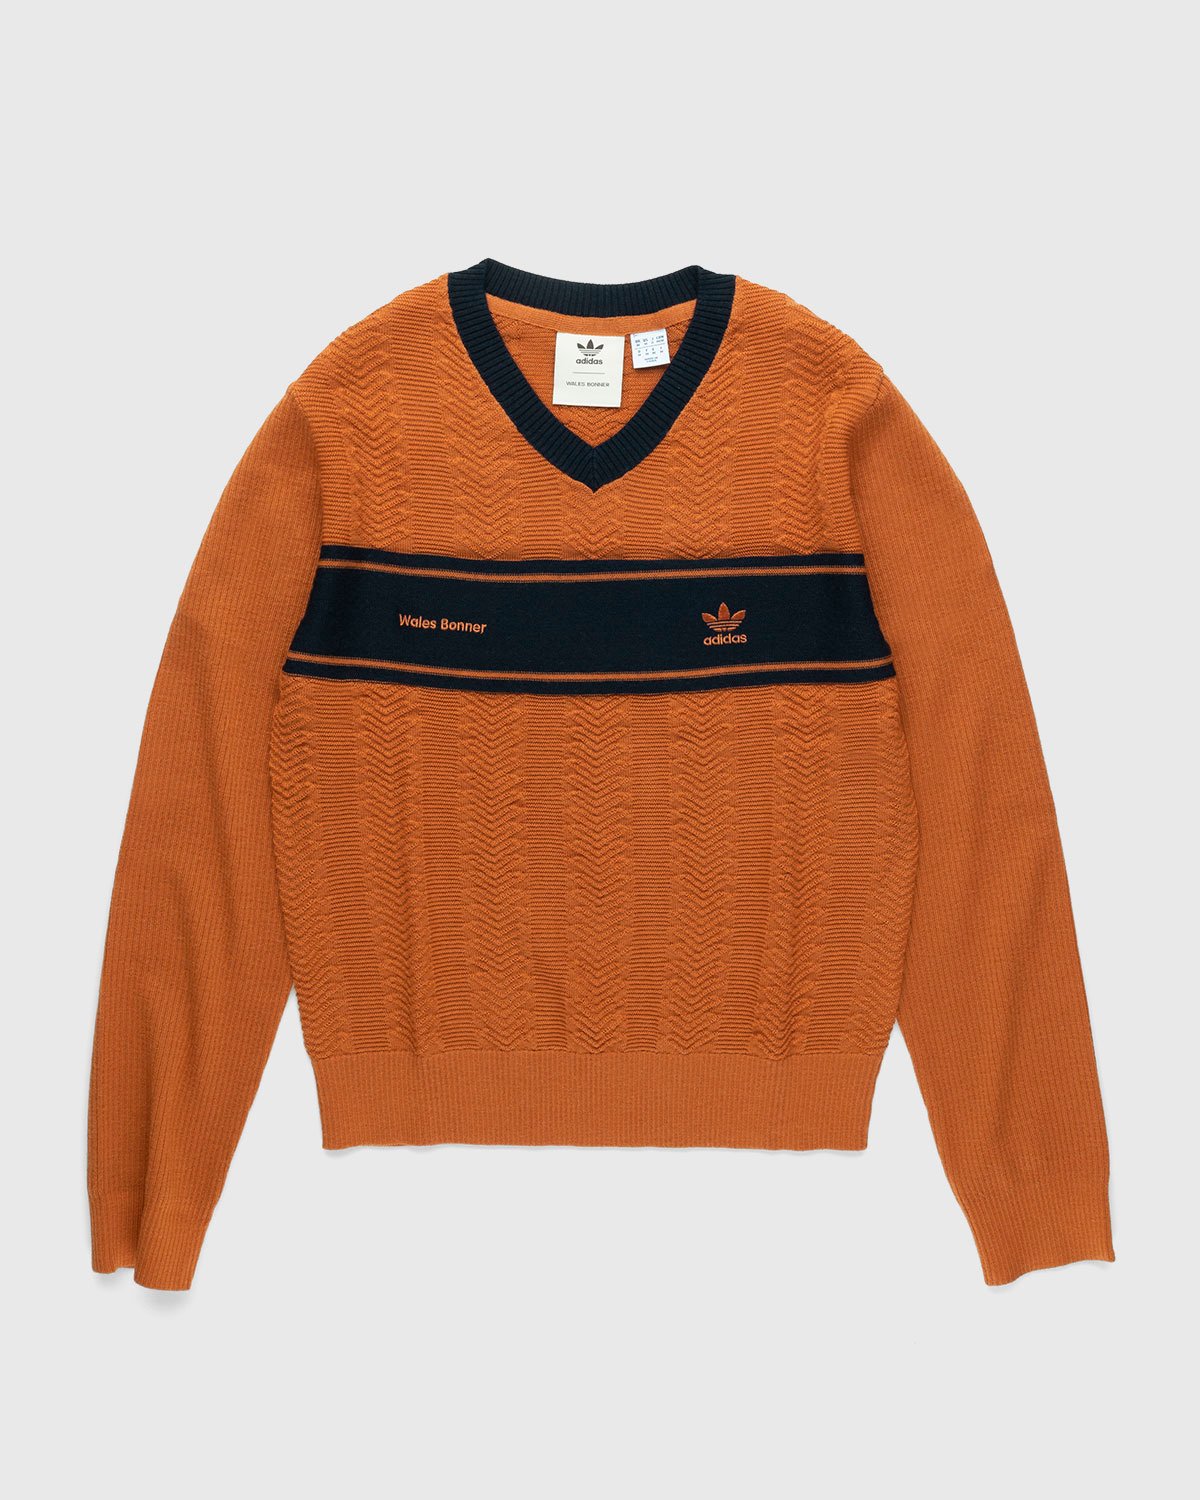 Adidas x Wales Bonner - Knit Longsleeve - Clothing - Orange - Image 1